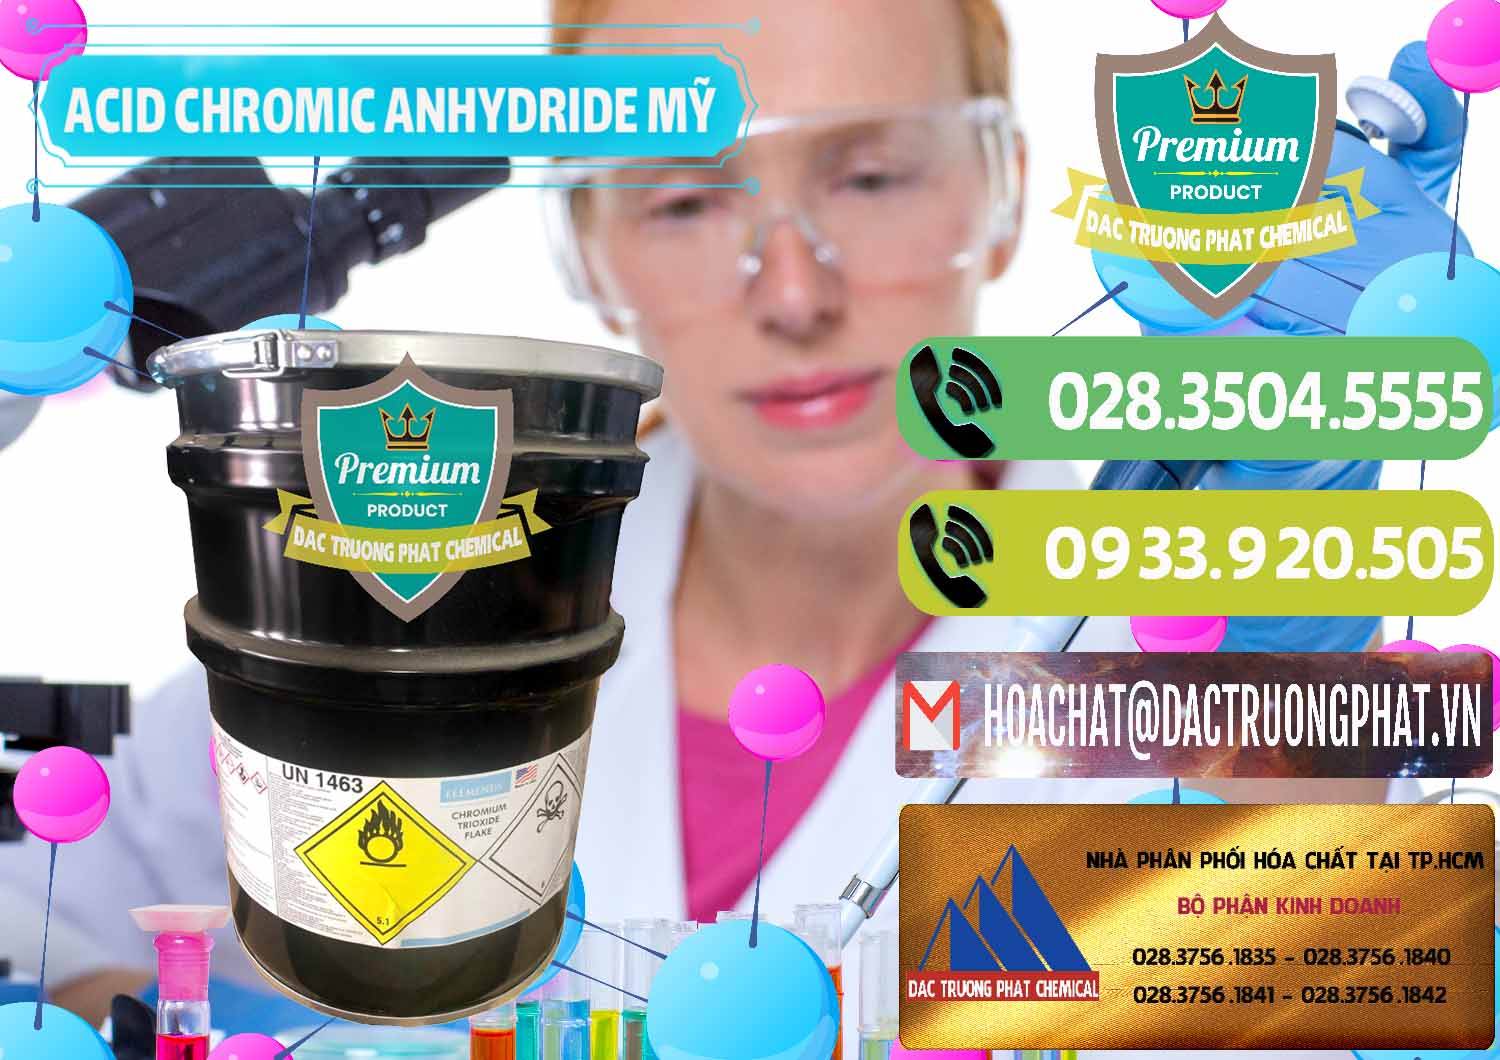 Công ty cung cấp & bán Acid Chromic Anhydride - Cromic CRO3 USA Mỹ - 0364 - Bán _ cung cấp hóa chất tại TP.HCM - hoachatmientay.vn